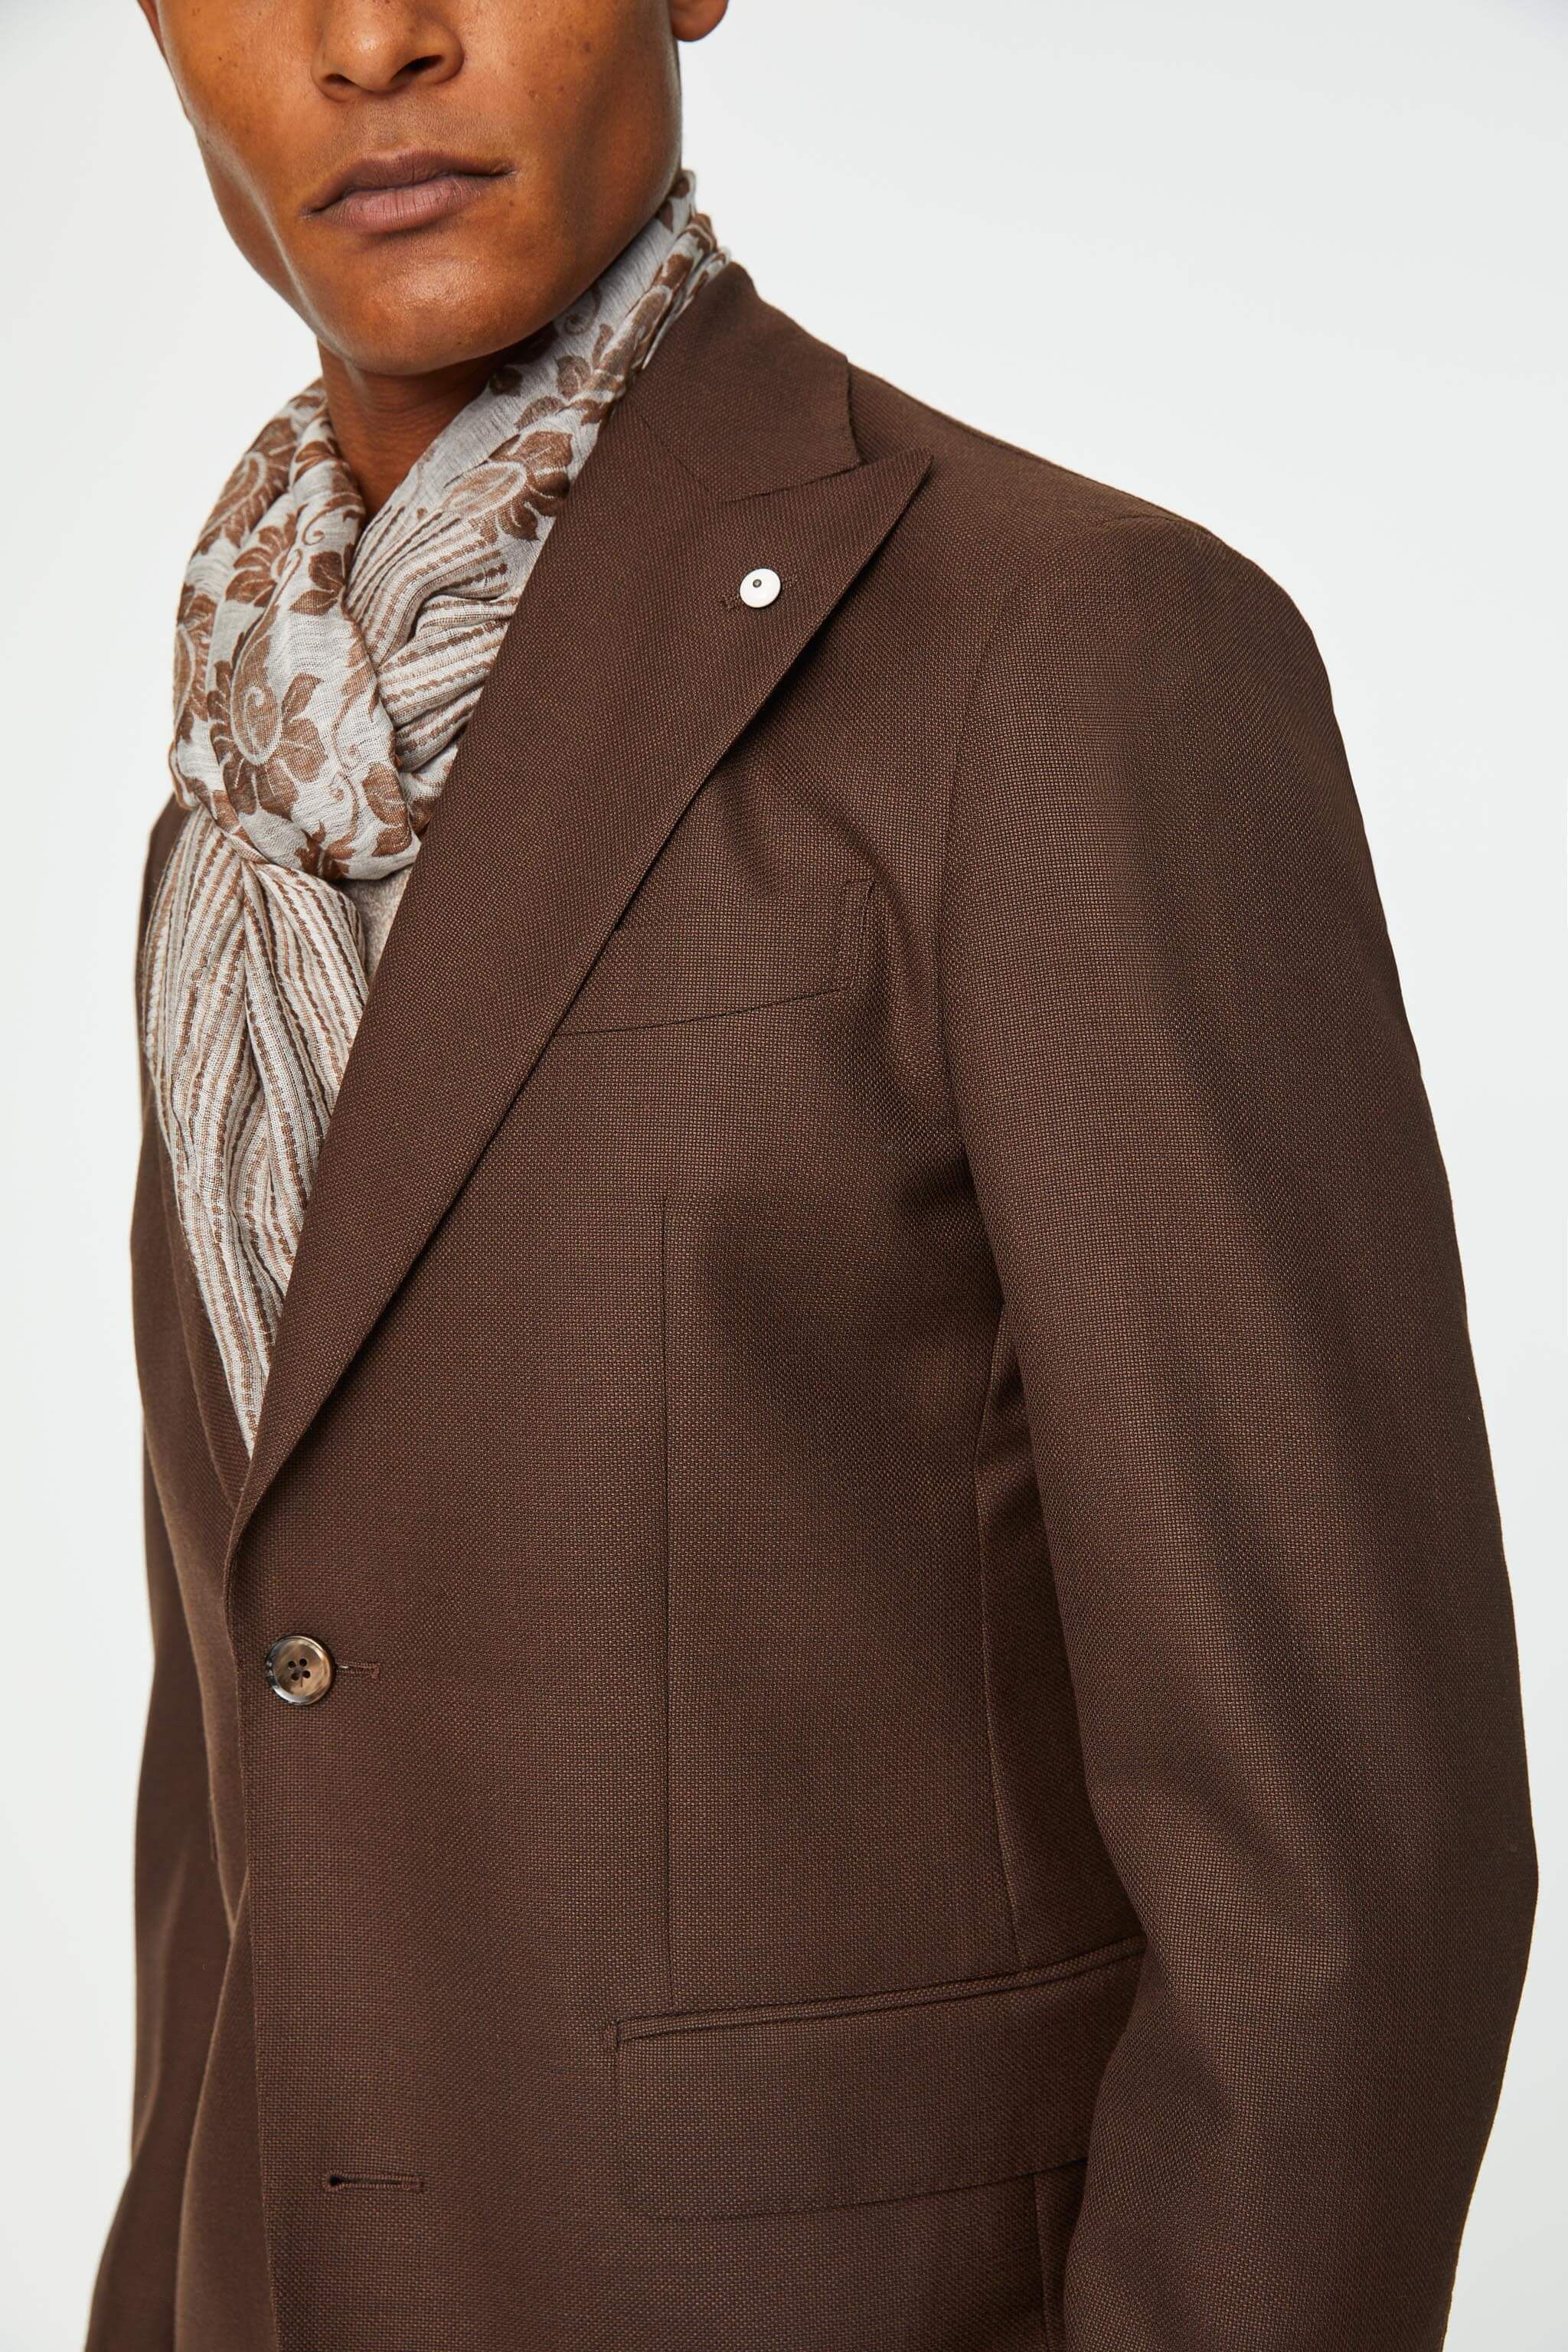 PAUL jacket in brown